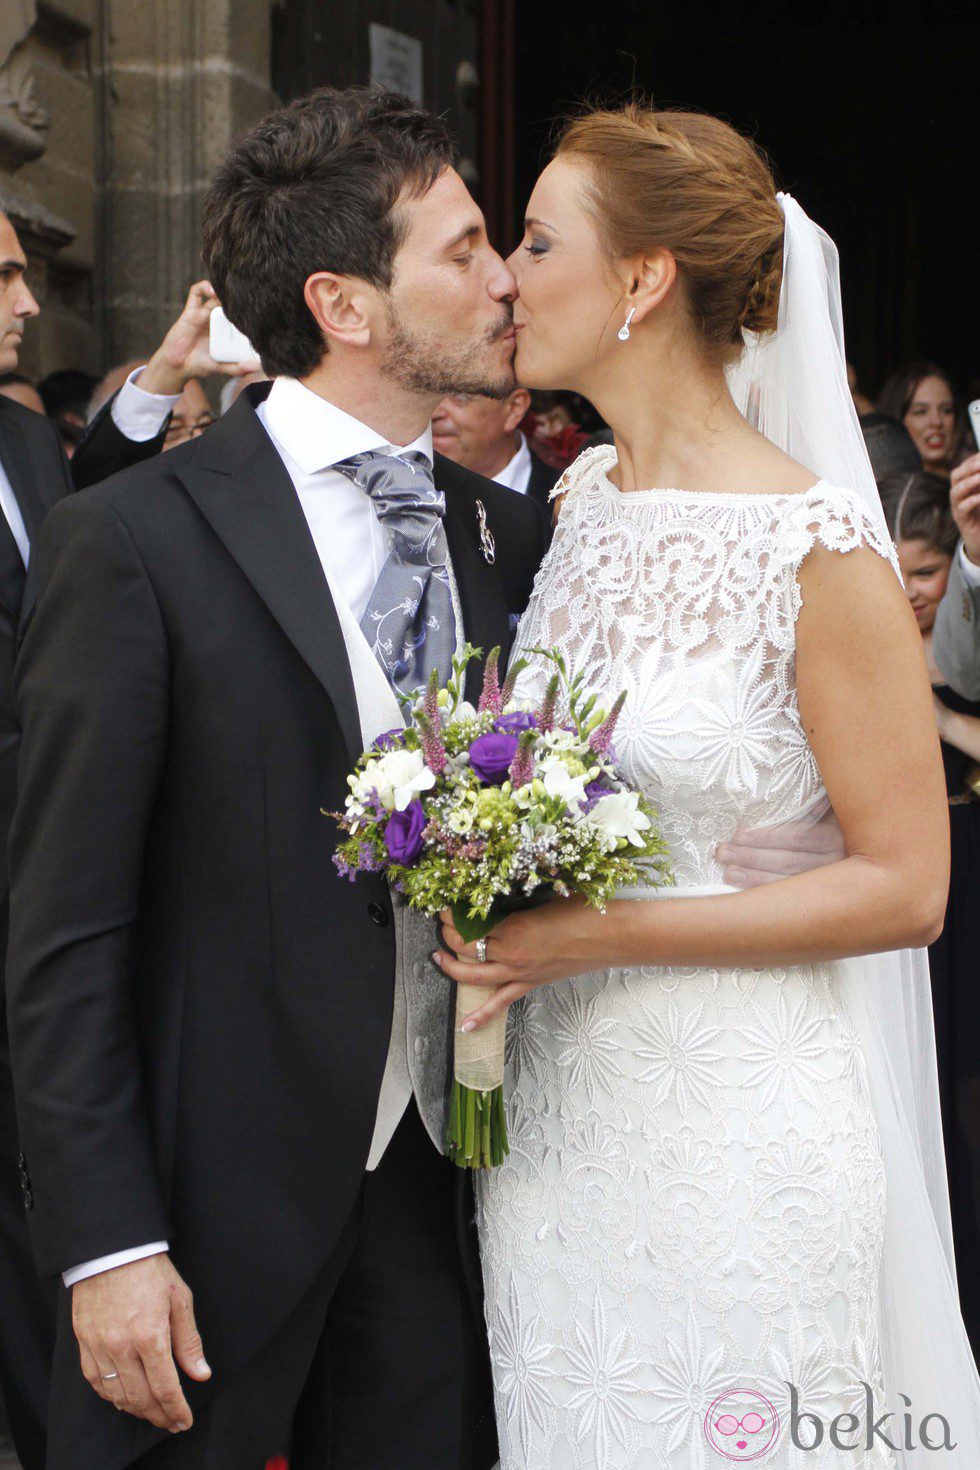 David de María y Lola Escobedo se besan tras su boda